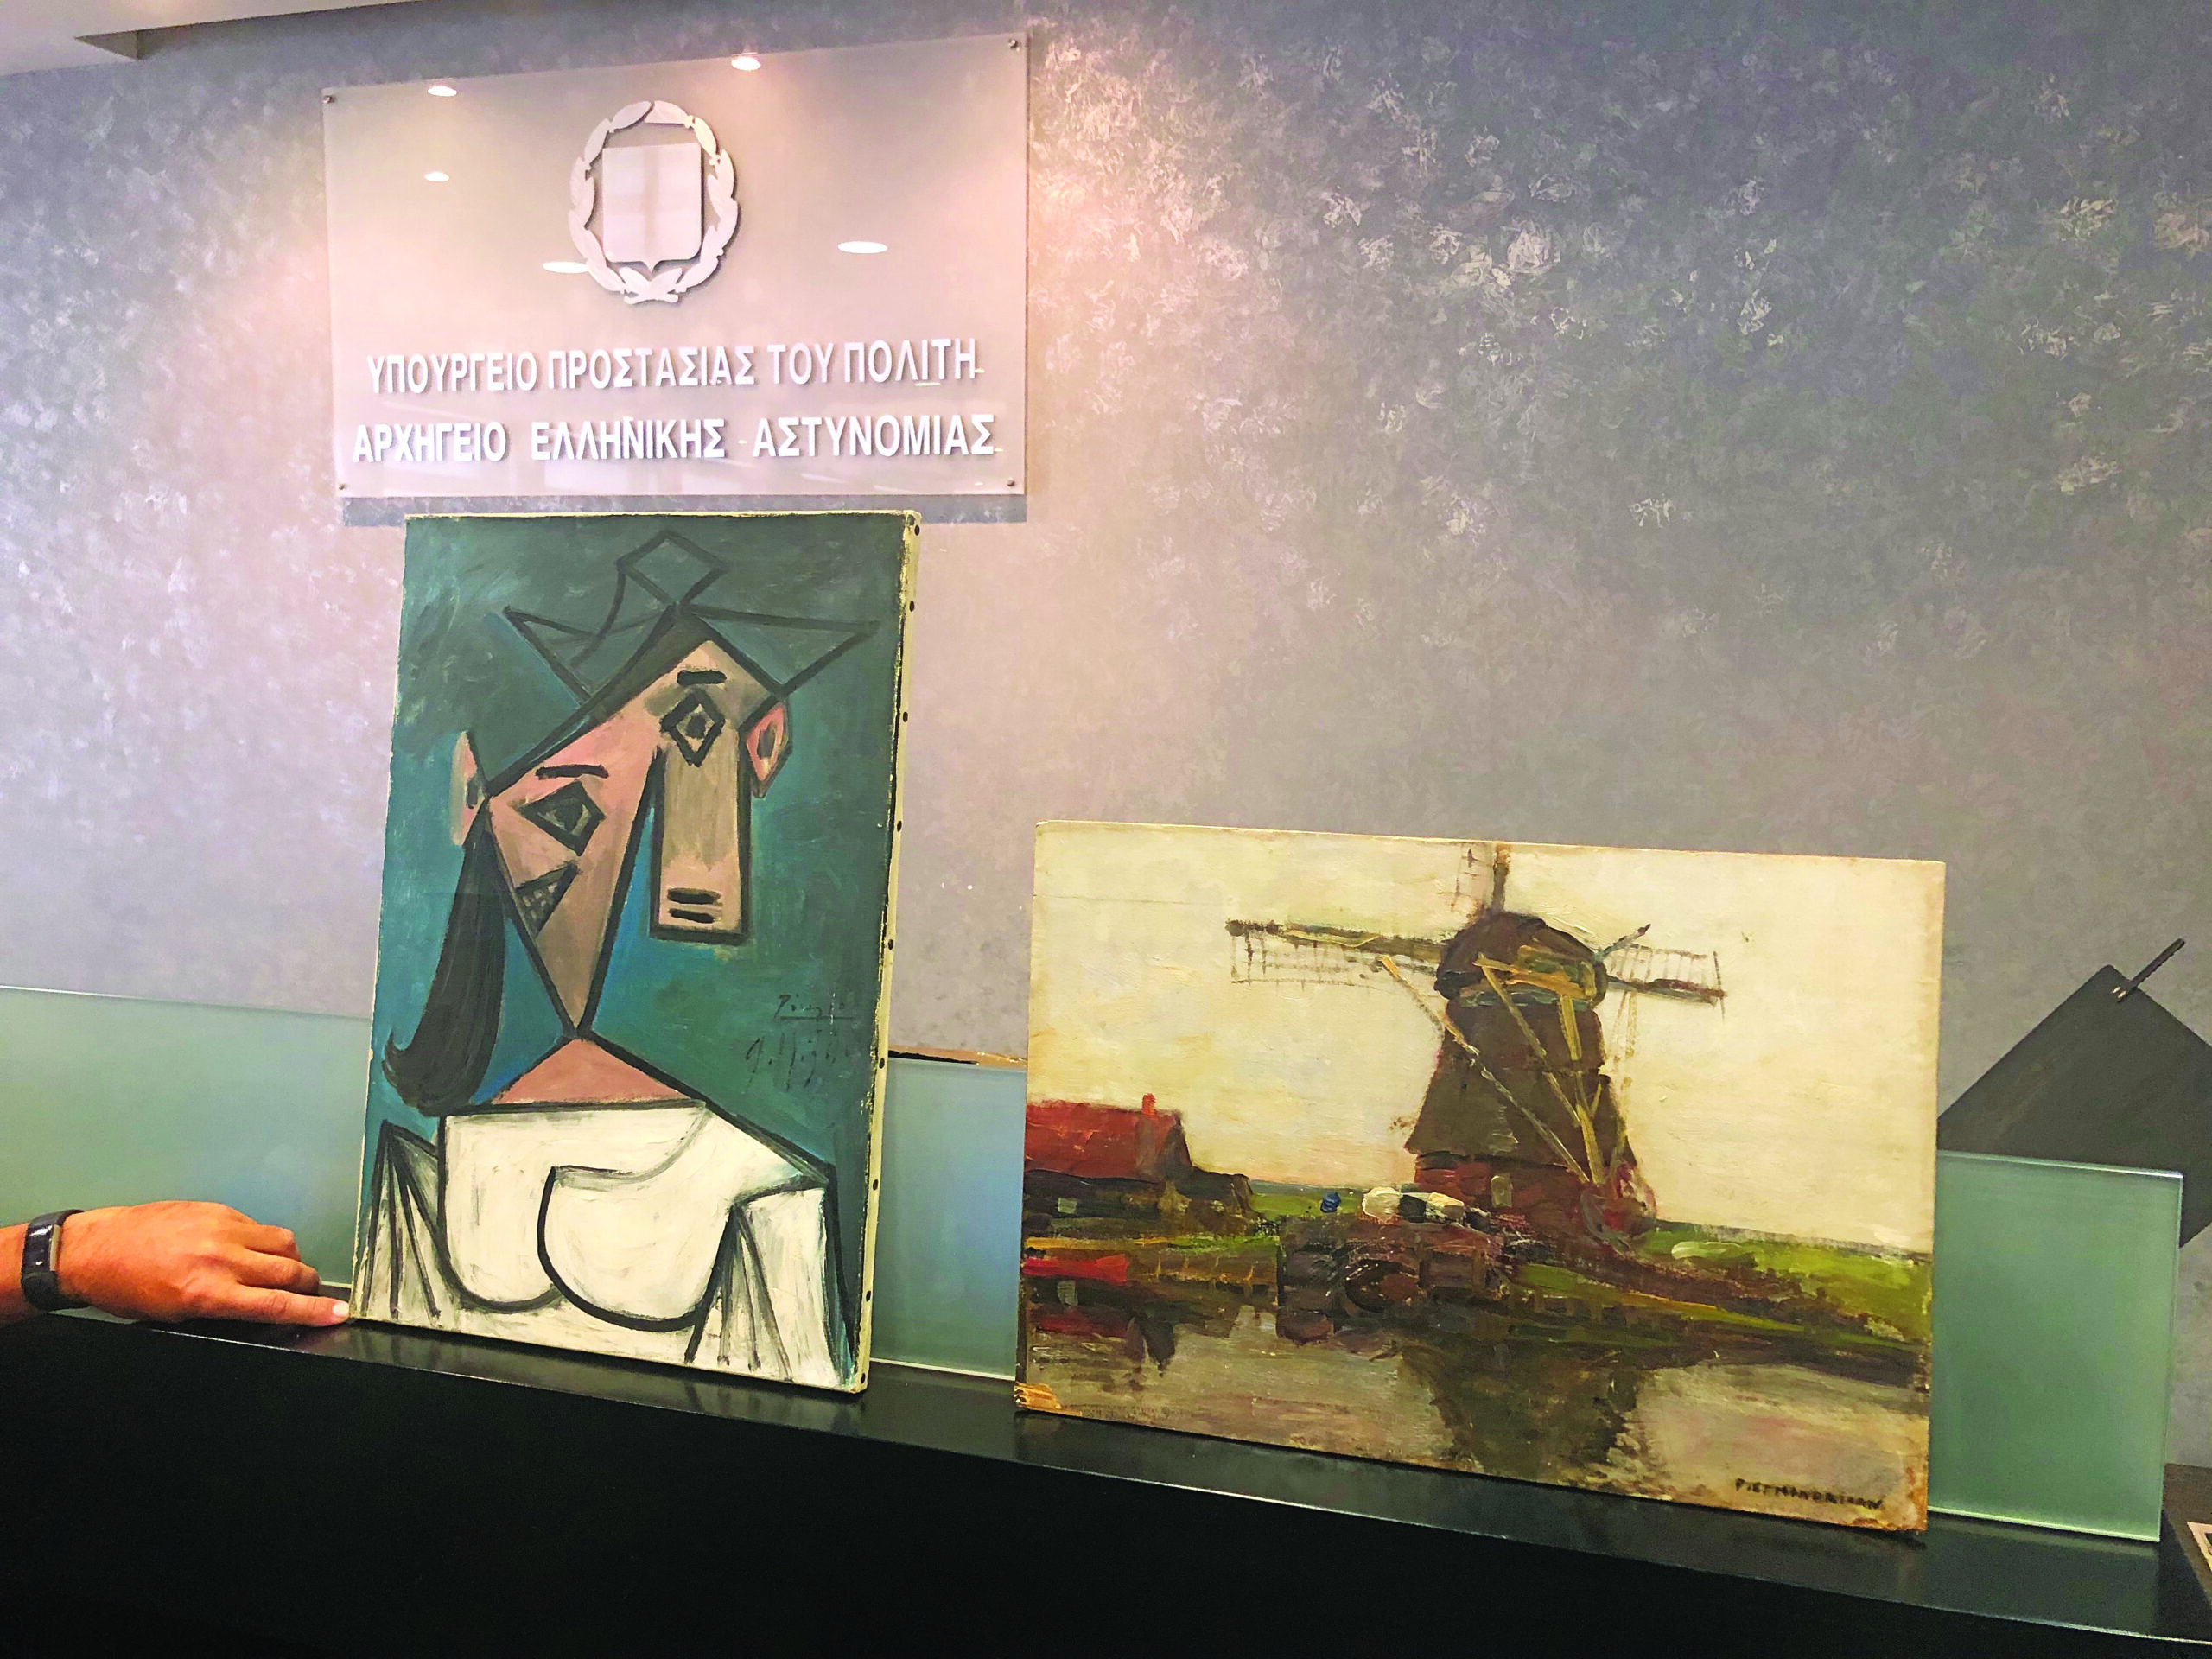 Εθνική Πινακοθήκη: Επέστρεψαν οι κλεμμένοι πίνακες Πικάσο, Μοντριάν που βρέθηκαν σε ρεματιά της Κερατέας